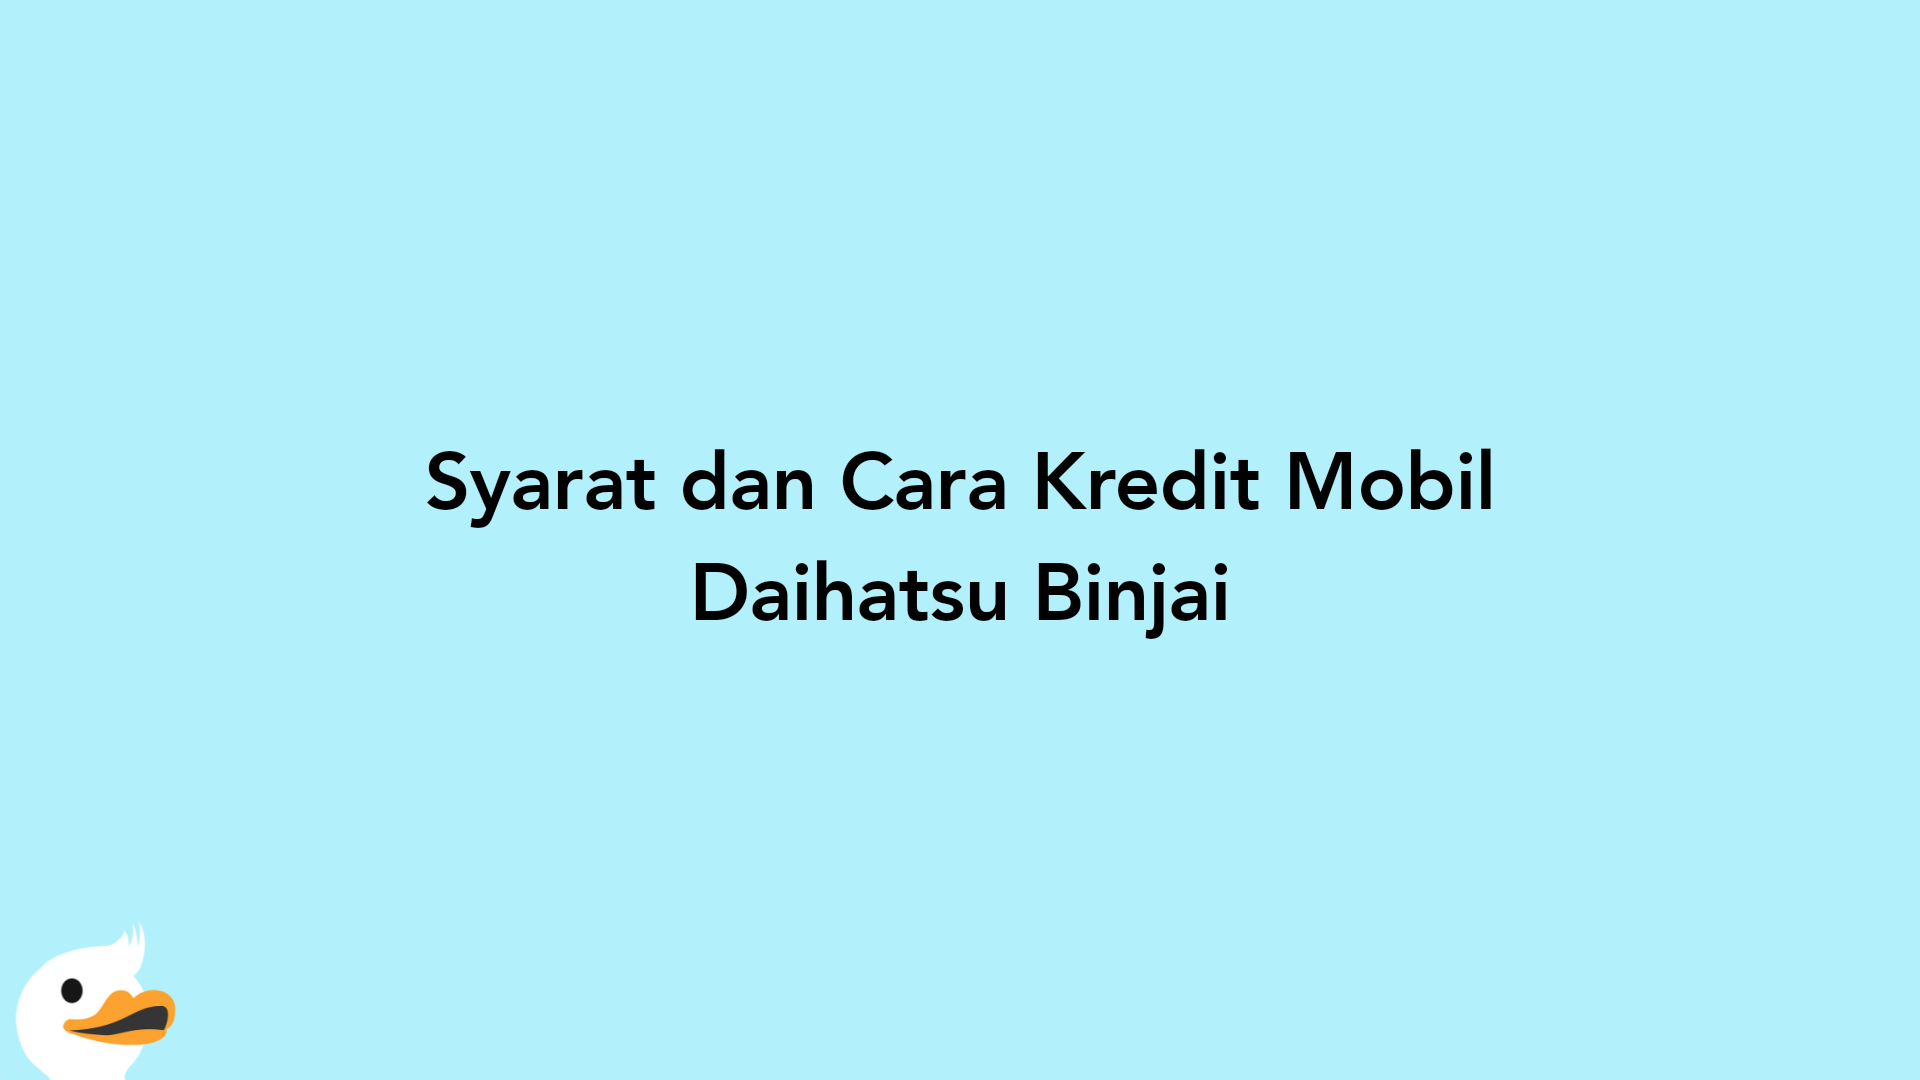 Syarat dan Cara Kredit Mobil Daihatsu Binjai